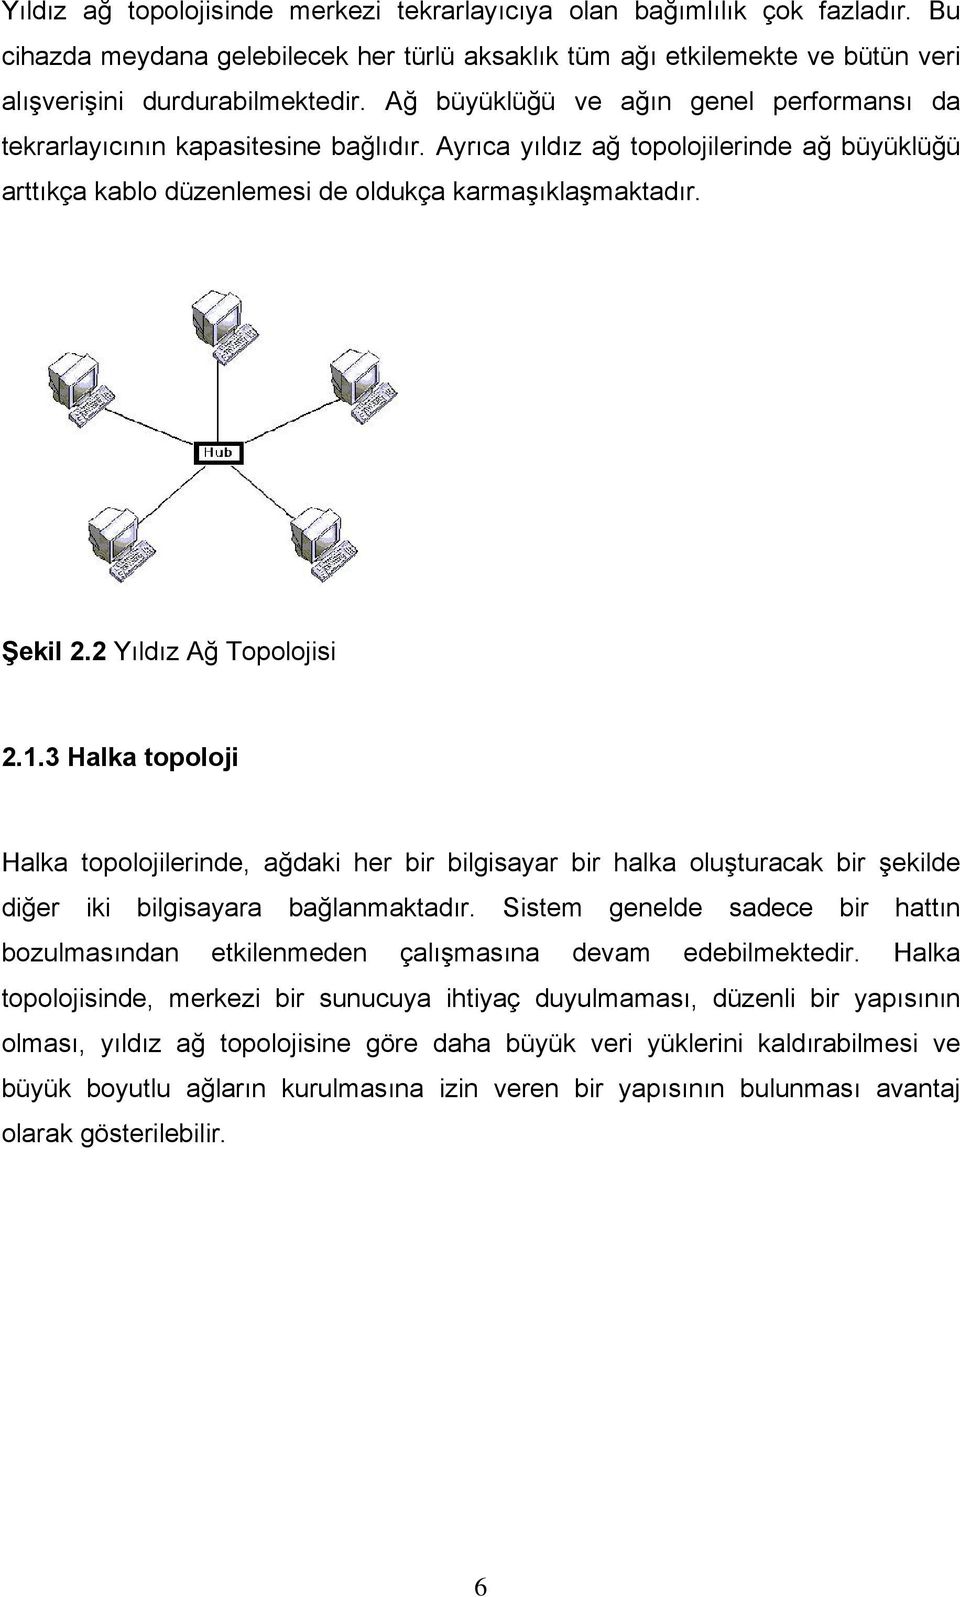 2 Yıldız Ağ Topolojisi 2.1.3 Halka topoloji Halka topolojilerinde, ağdaki her bir bilgisayar bir halka oluşturacak bir şekilde diğer iki bilgisayara bağlanmaktadır.